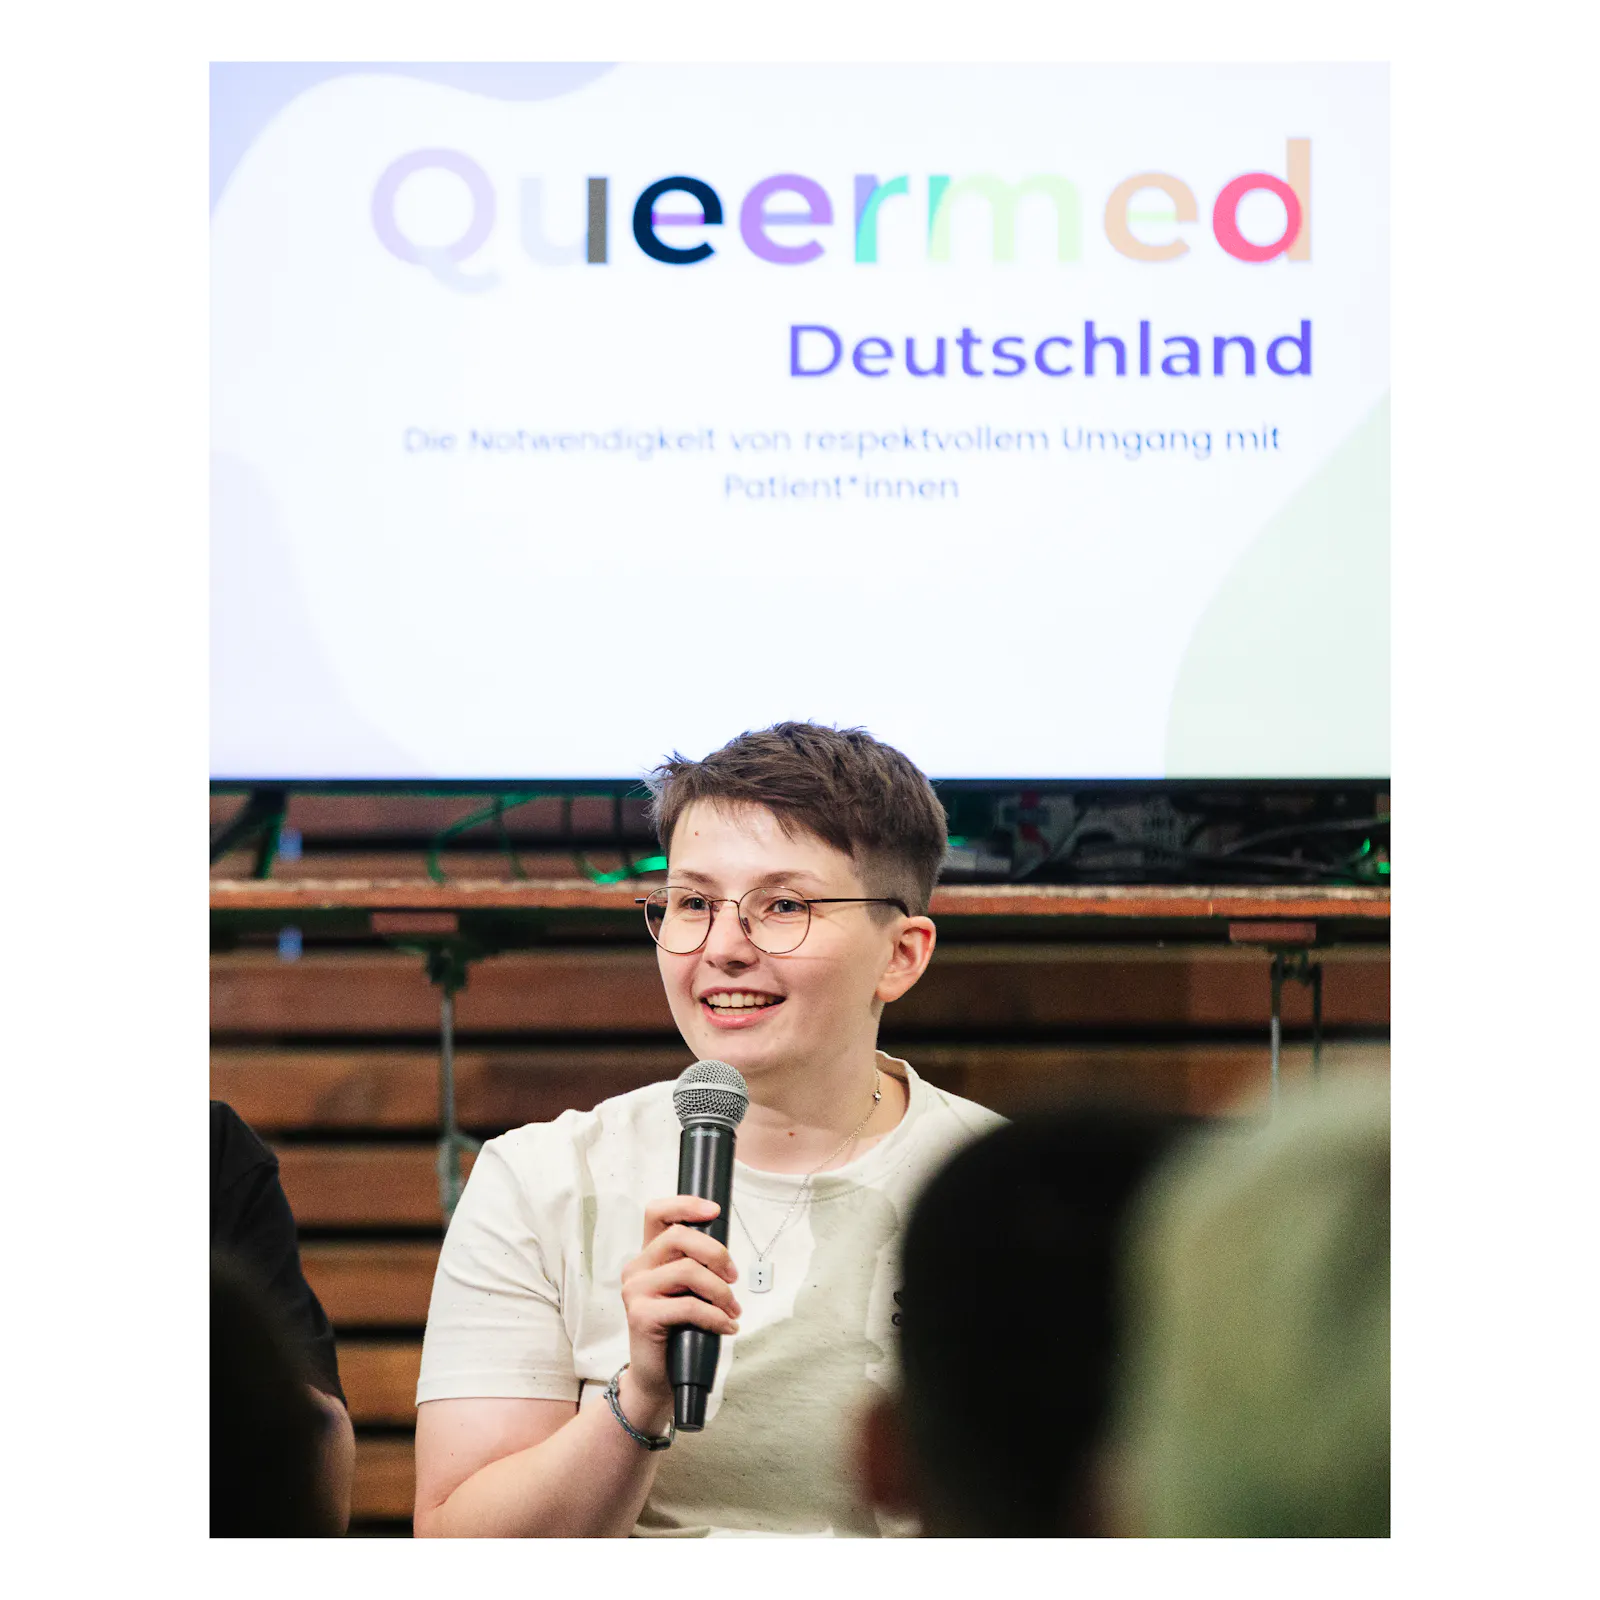 Queermed Gründer*in Sara Grzybek hält ein Mikrofon in der Hand und spricht vor einem Publikum. Im Hintergrund ist auf einem Fernseher der erste Slide einer Präsentation zu sehen.